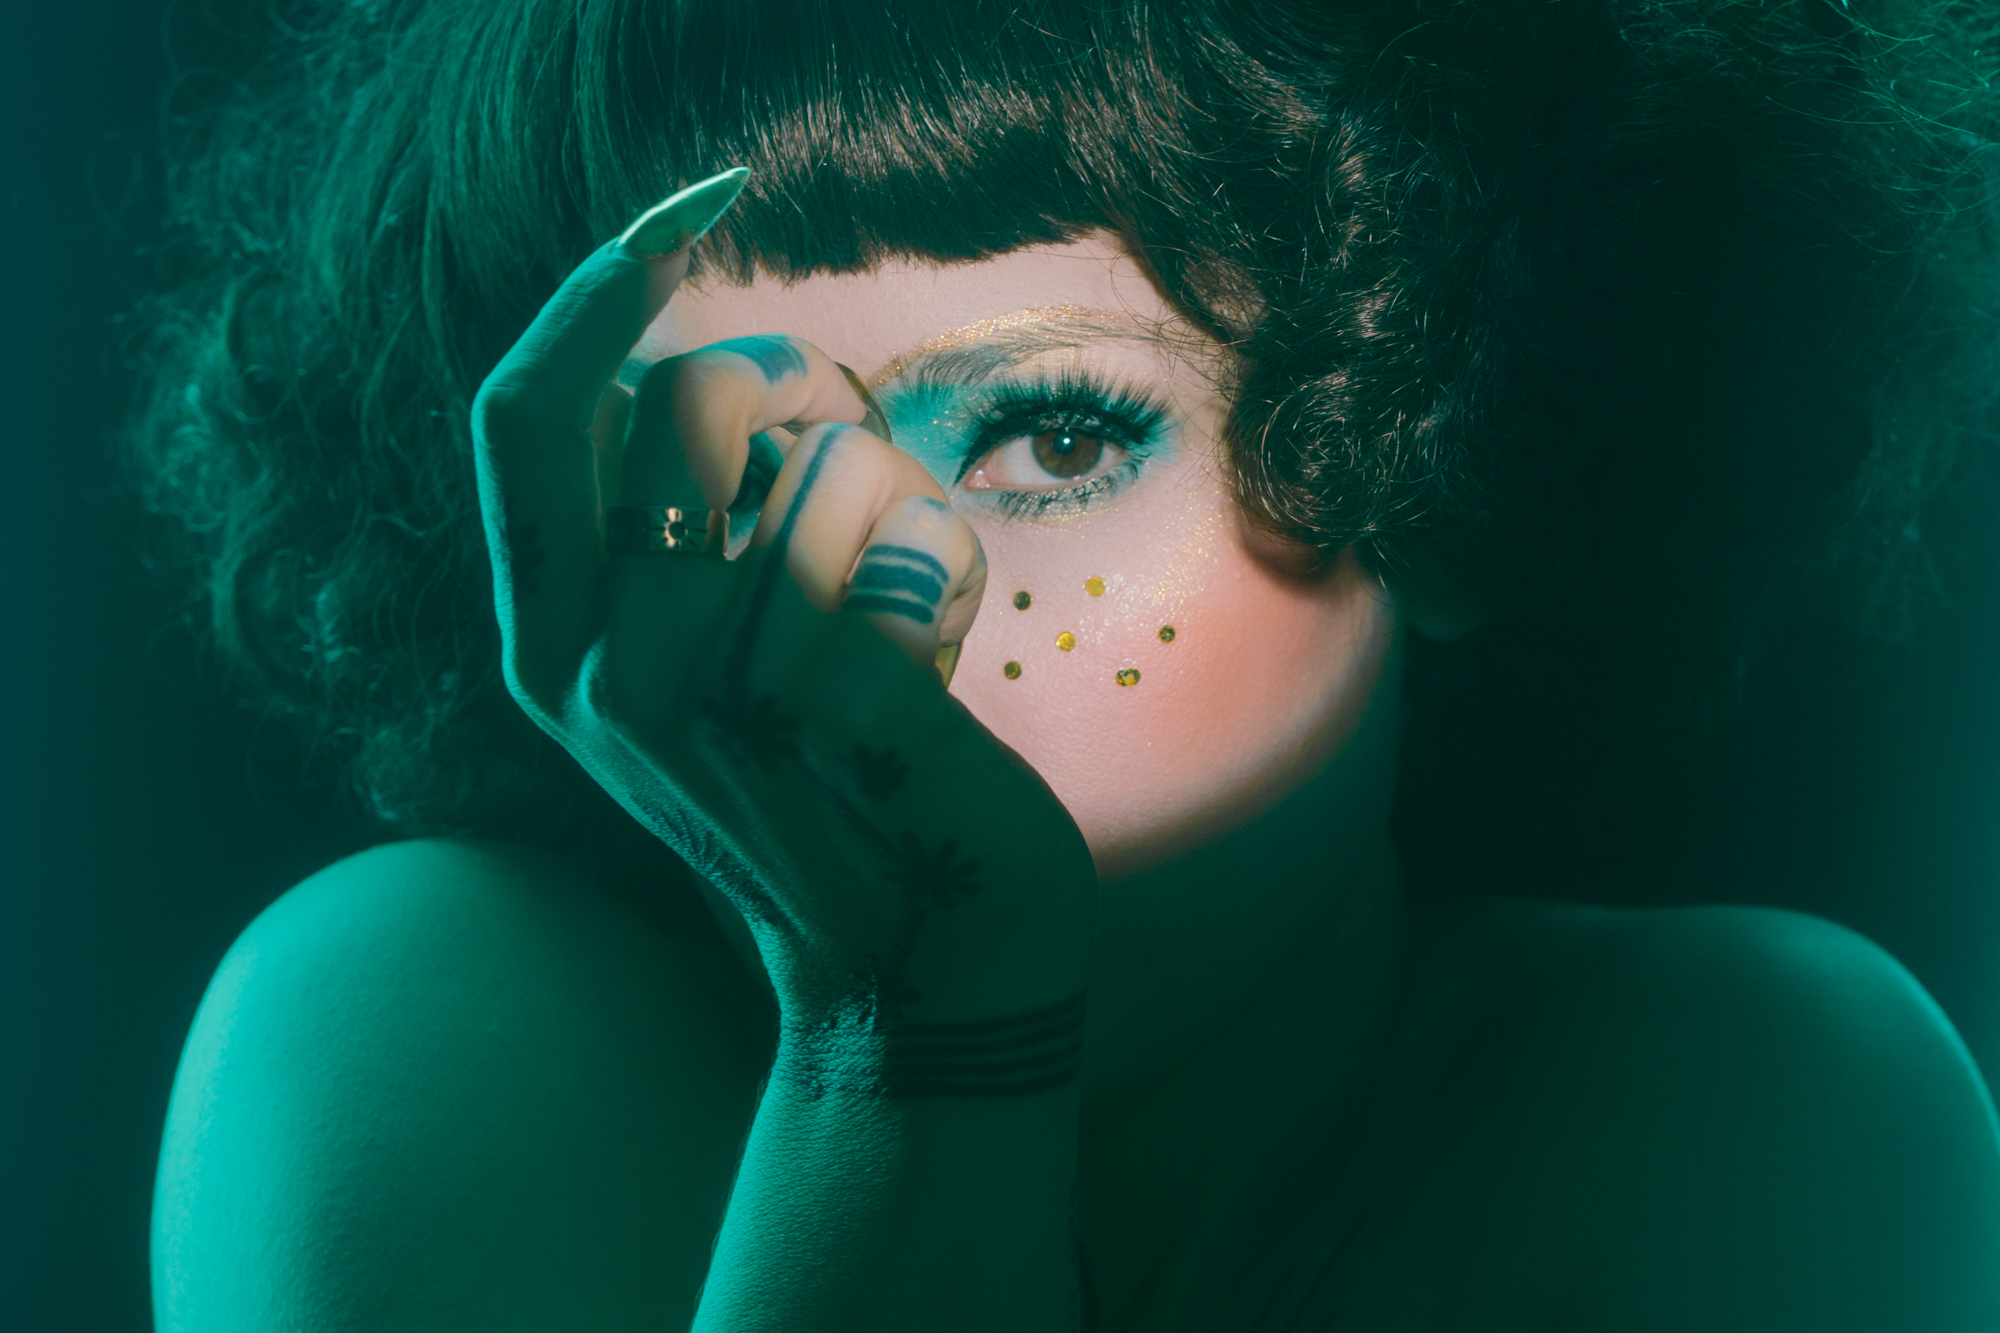 Osoba z fryzurą na kręcony bob i efektownym makijażem, zawierającym niebieski cień do powiek i złote kropki na twarzy, częściowo zasłania twarz jedną ręką. Oświetlenie rzuca na scenę zielonkawy odcień, tworząc dramatyczną i tajemniczą atmosferę.